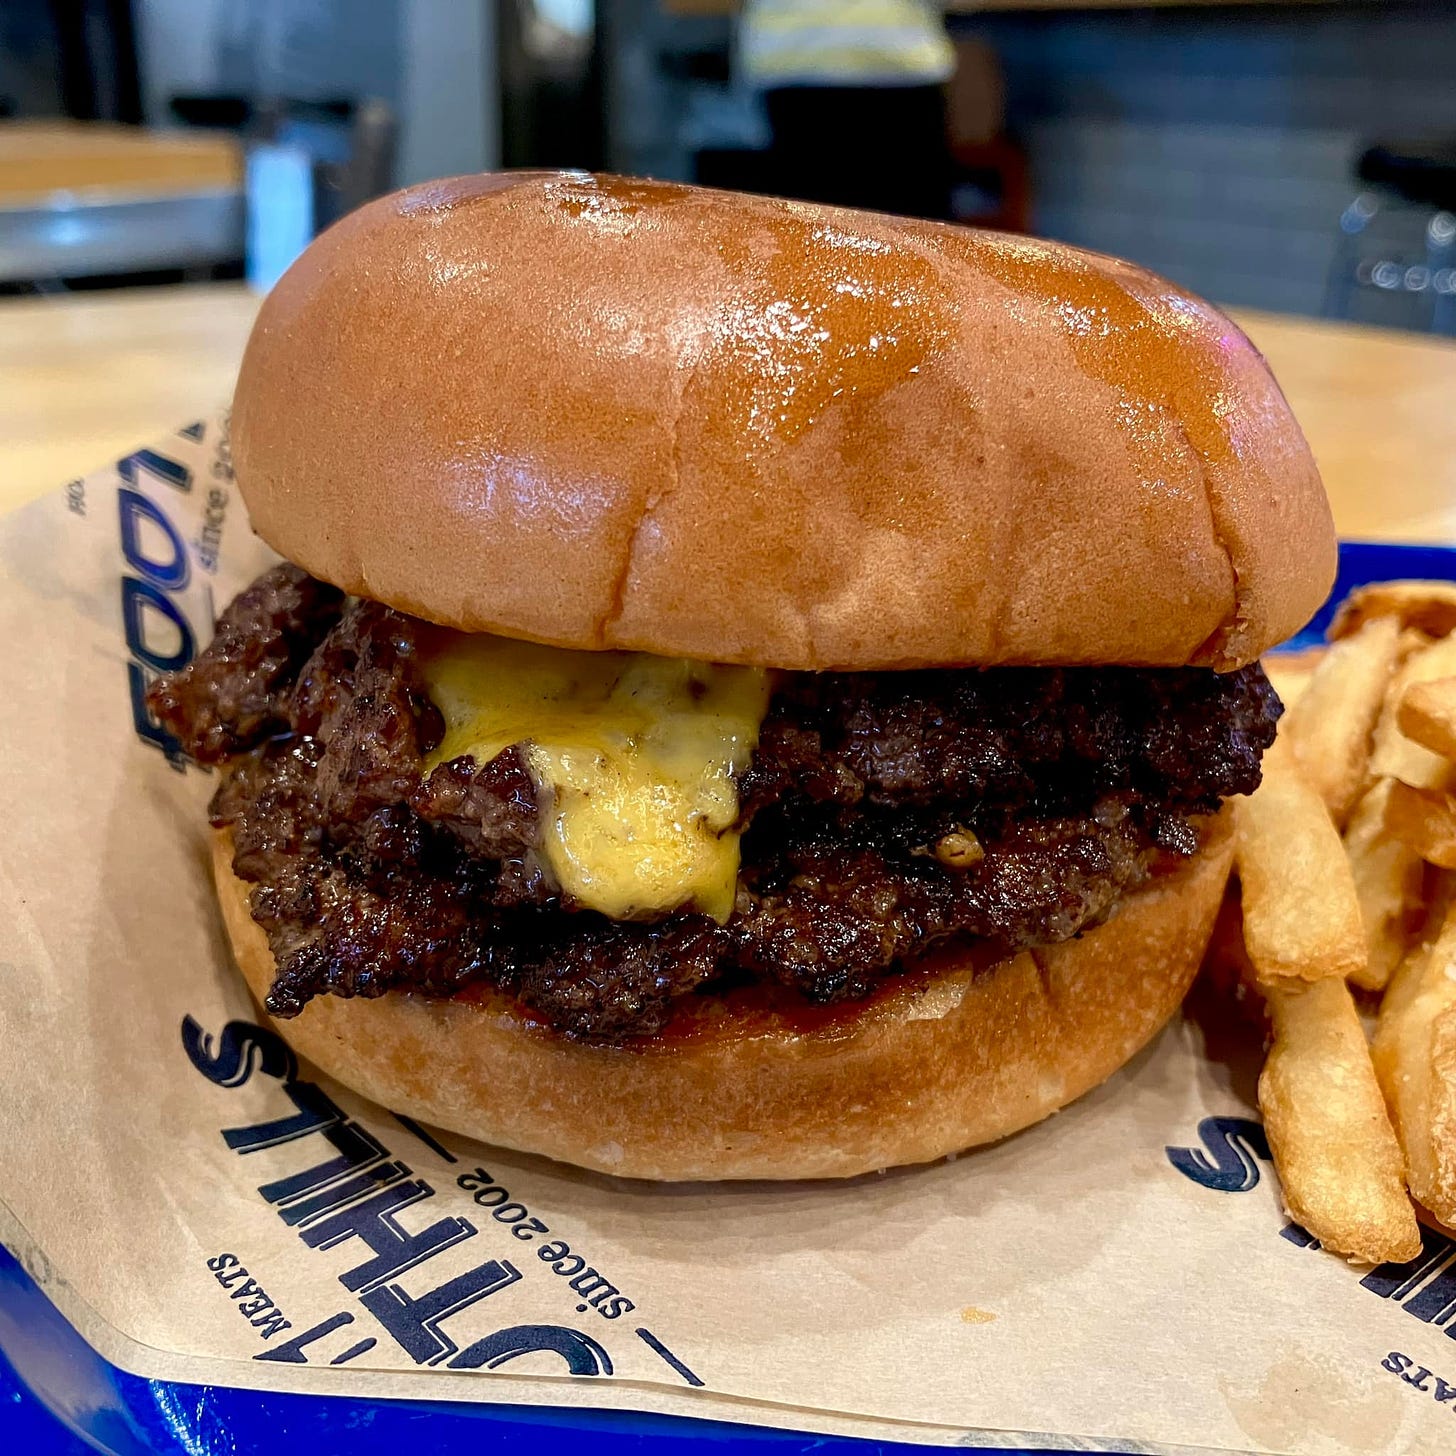 May be an image of burger